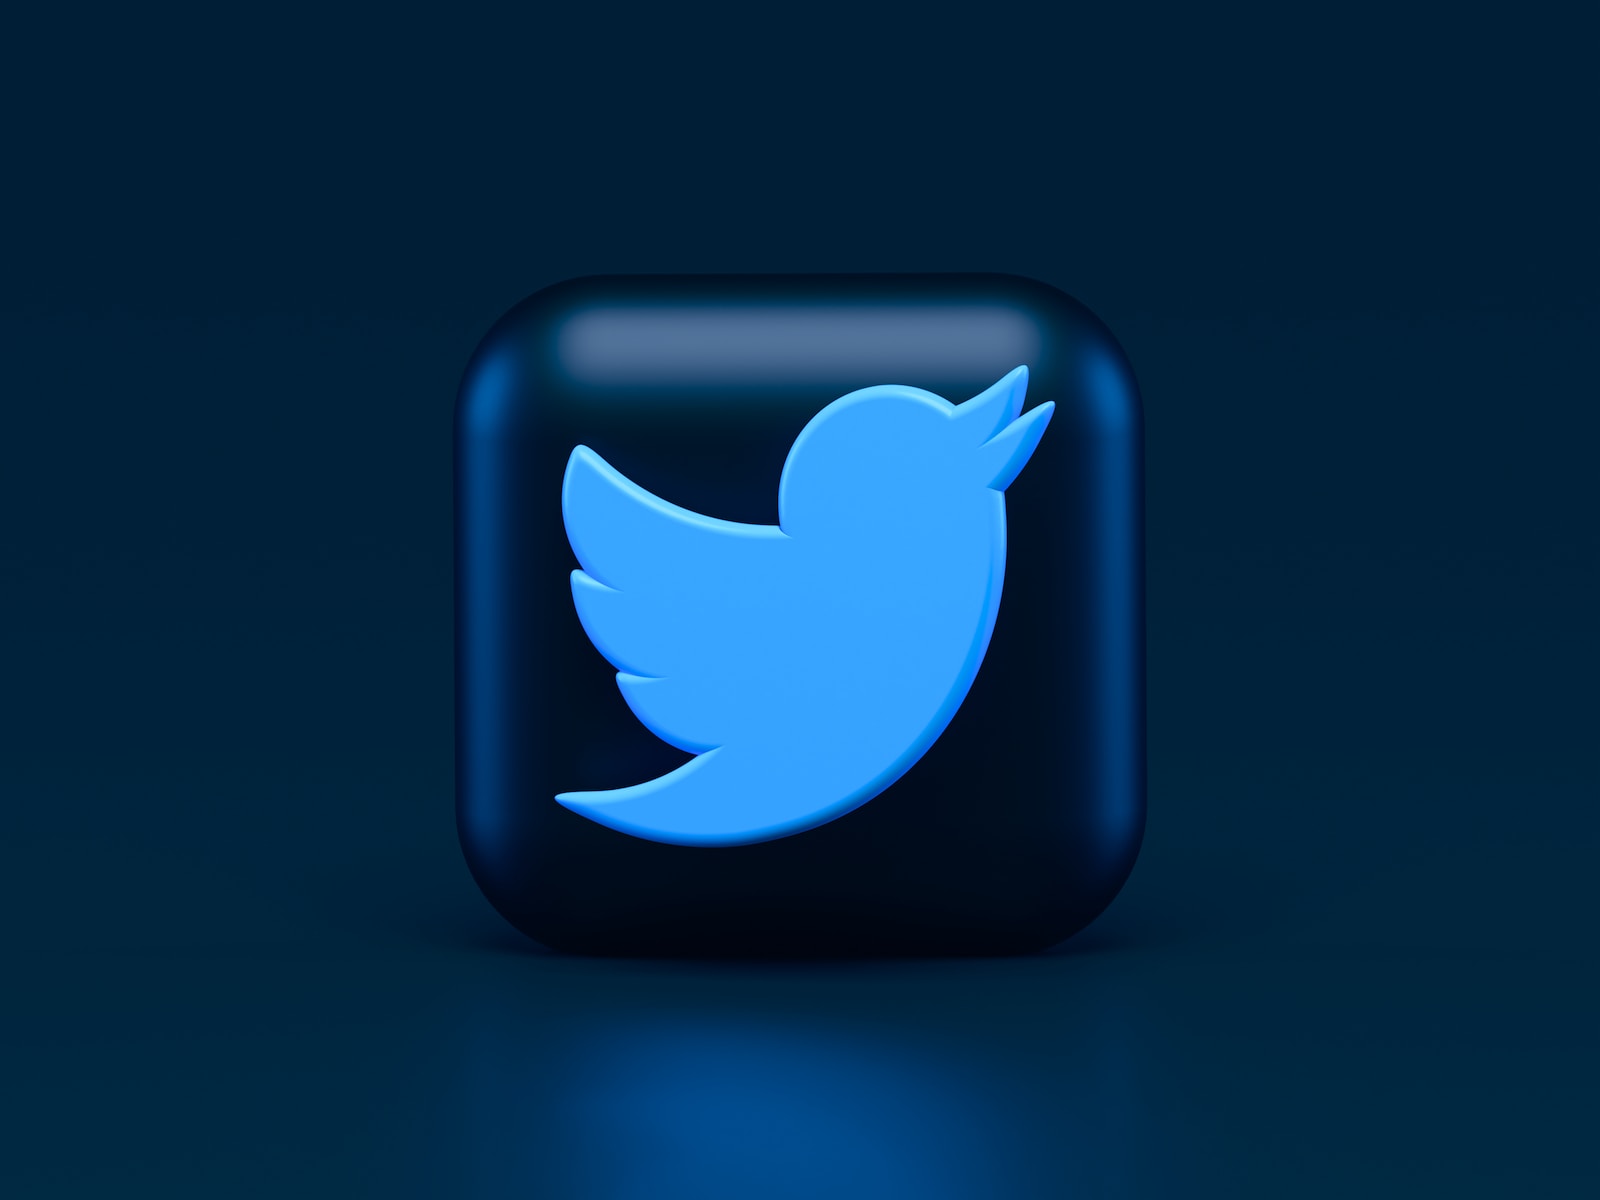 Twitter View Tweets